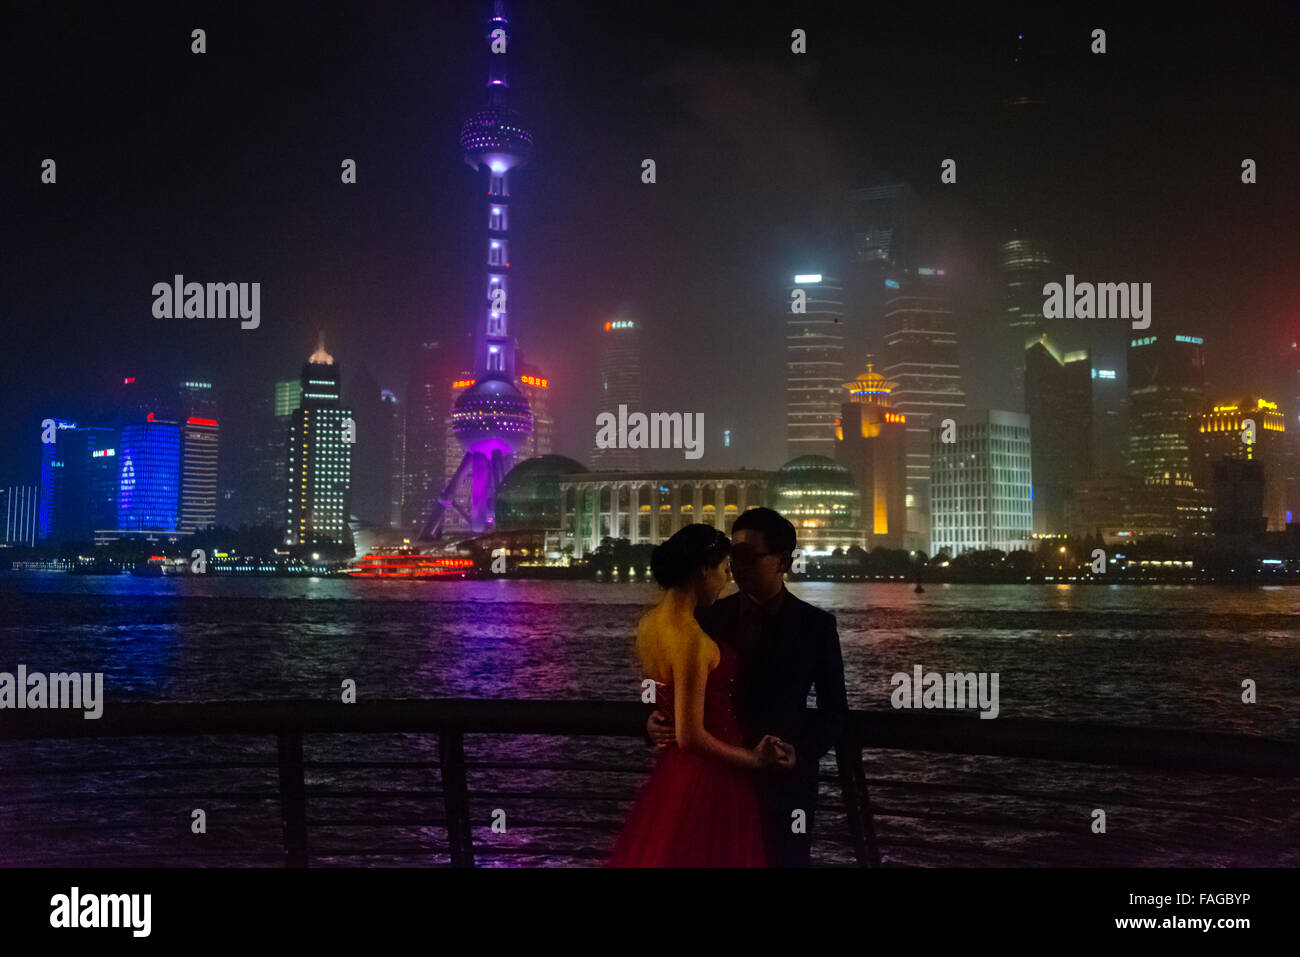 Nouvelle mariée sur le Bund par la rivière Huangpu, Pudong skyline dominé par l'Oriental Pearl TV Tower dans la distance, Shanghai, Chine Banque D'Images